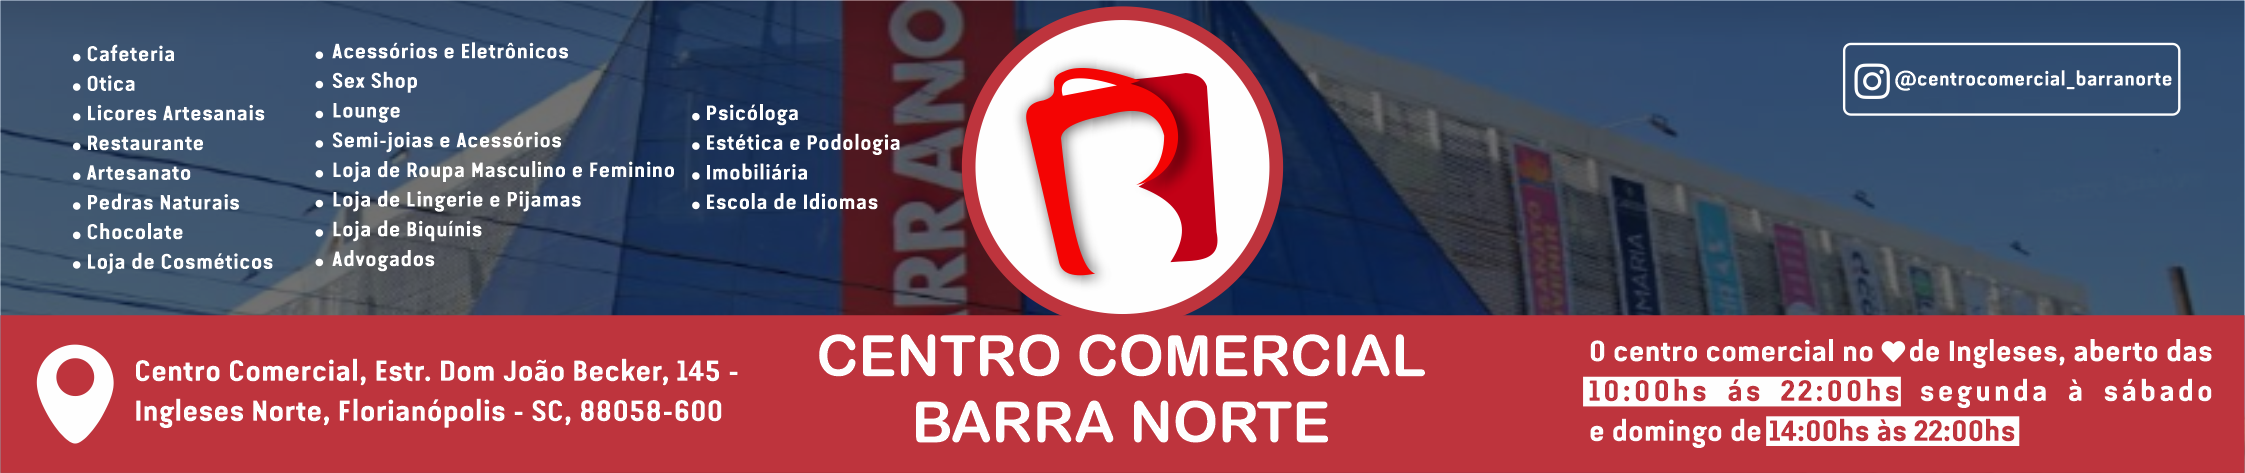 CENTRO COMERCIAL BARRA NORTE -